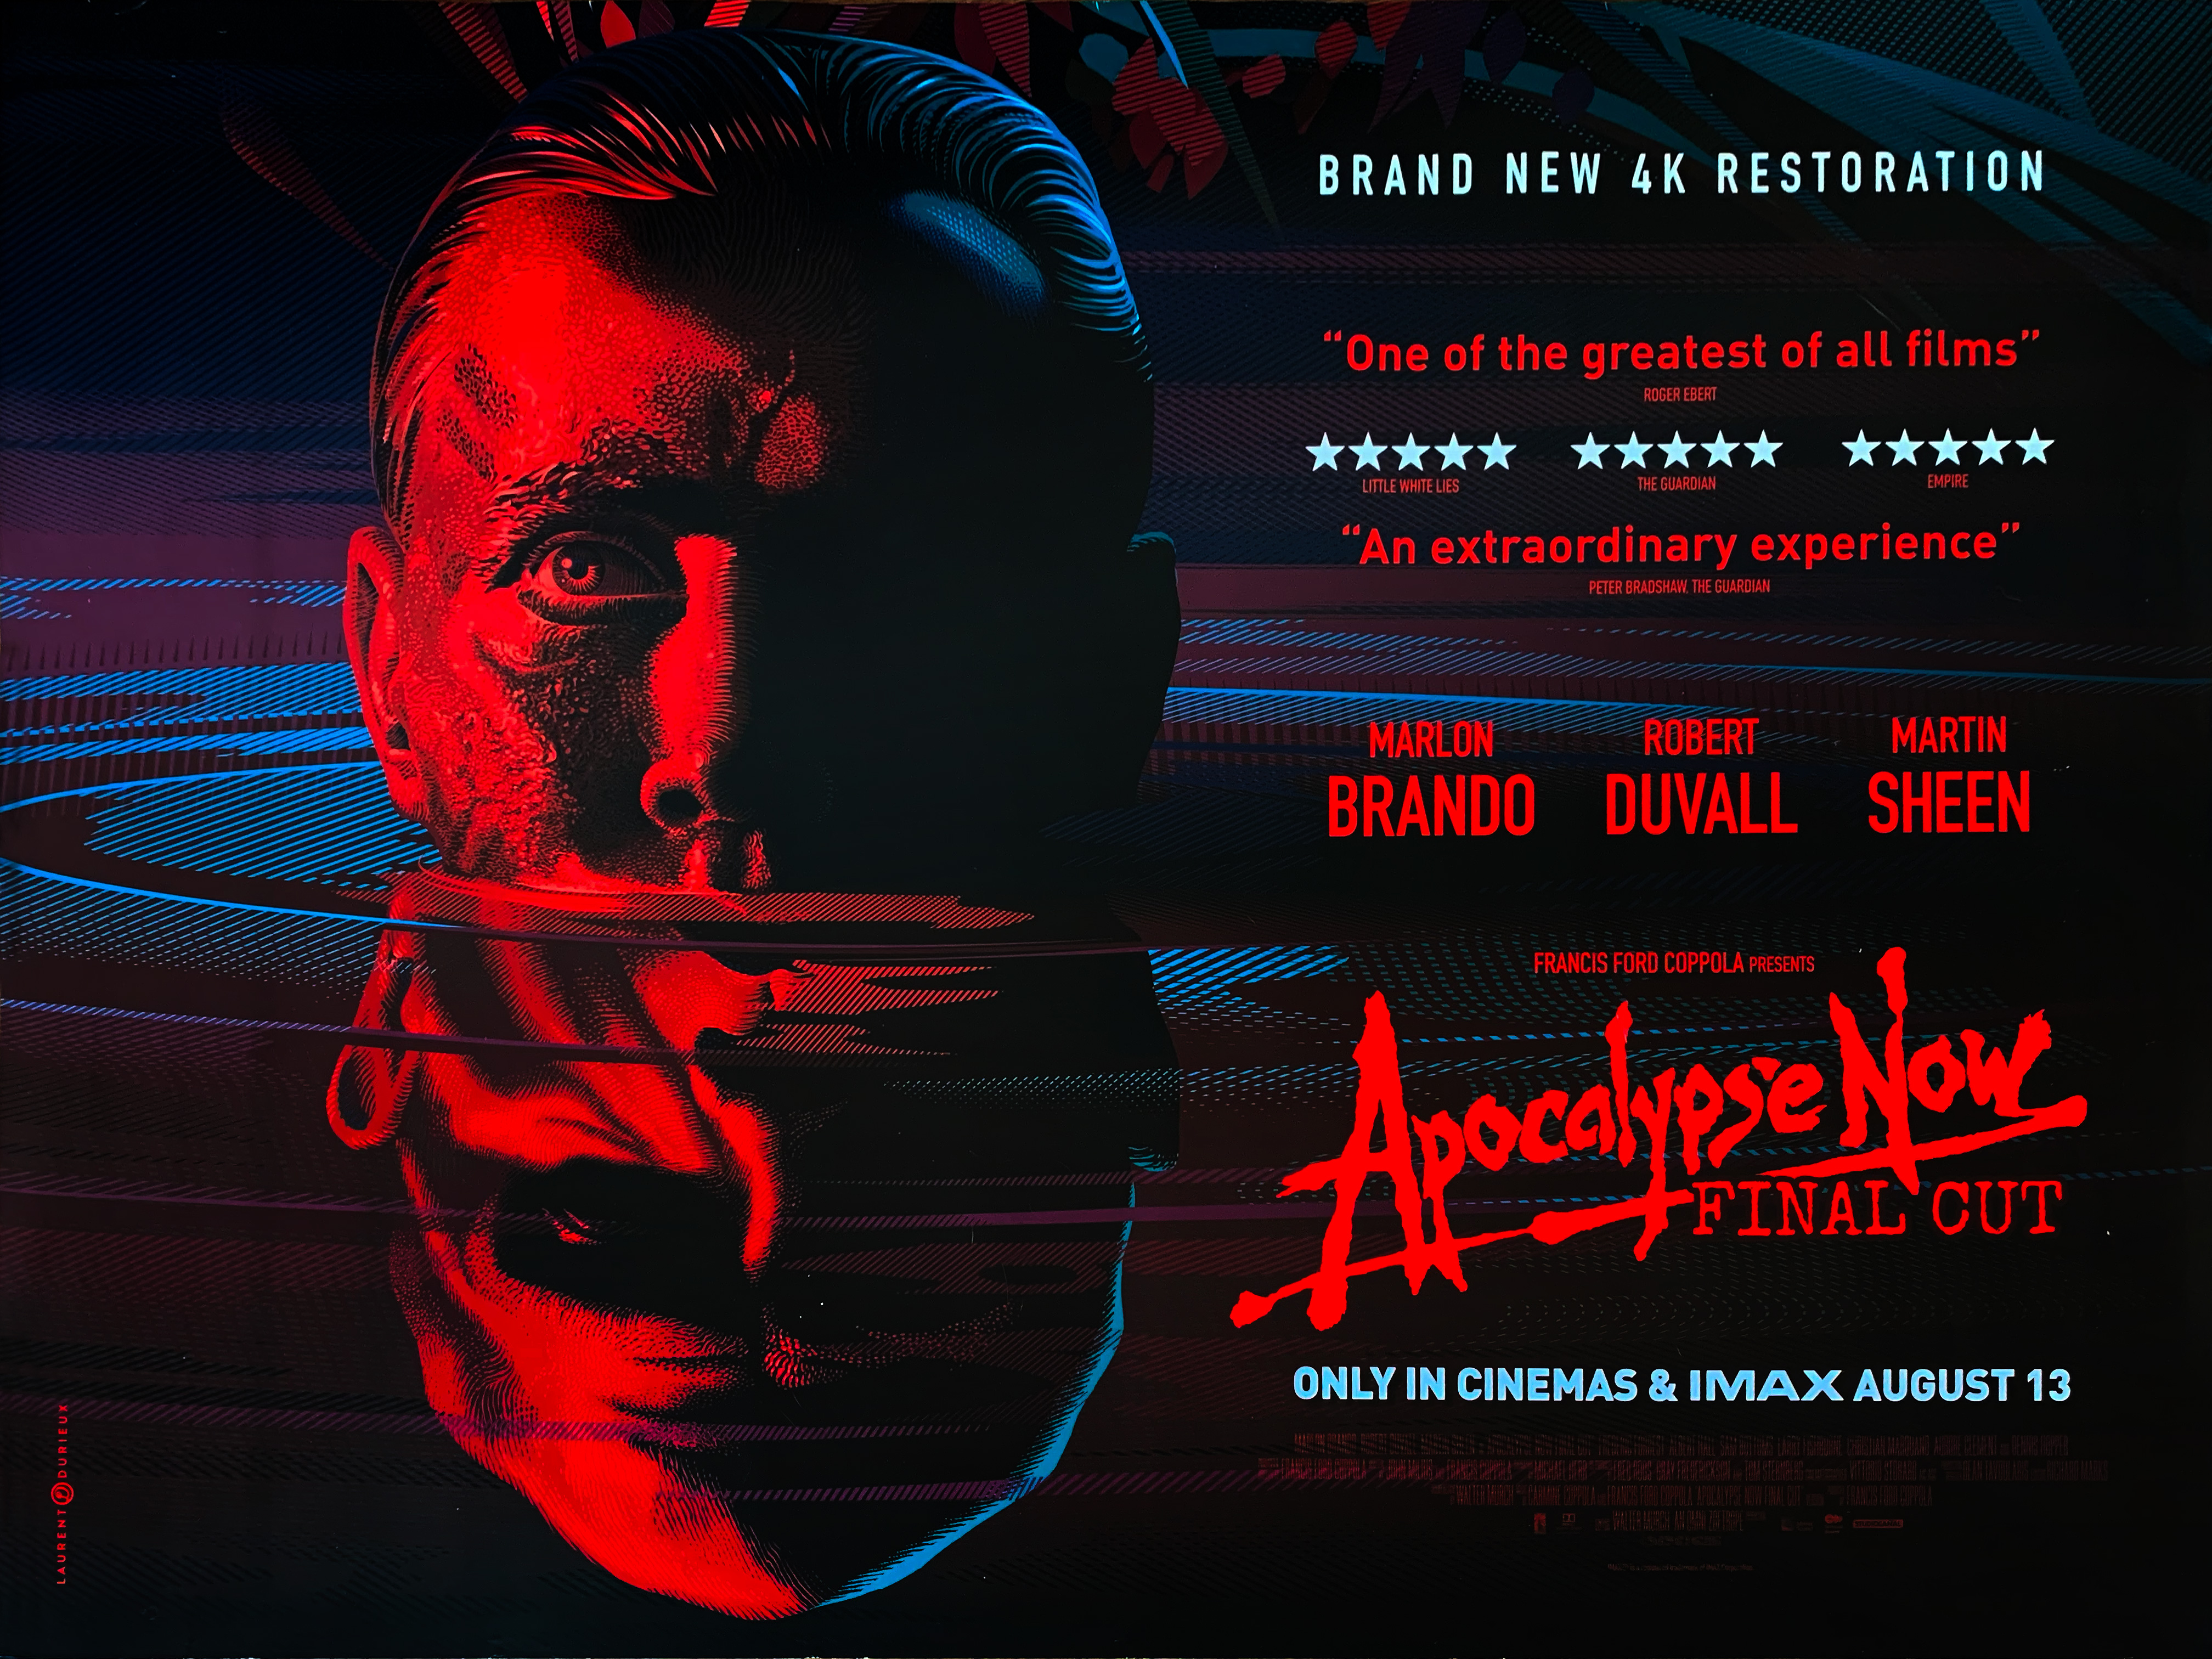 Apocalypse Now - Final Cut quad poster